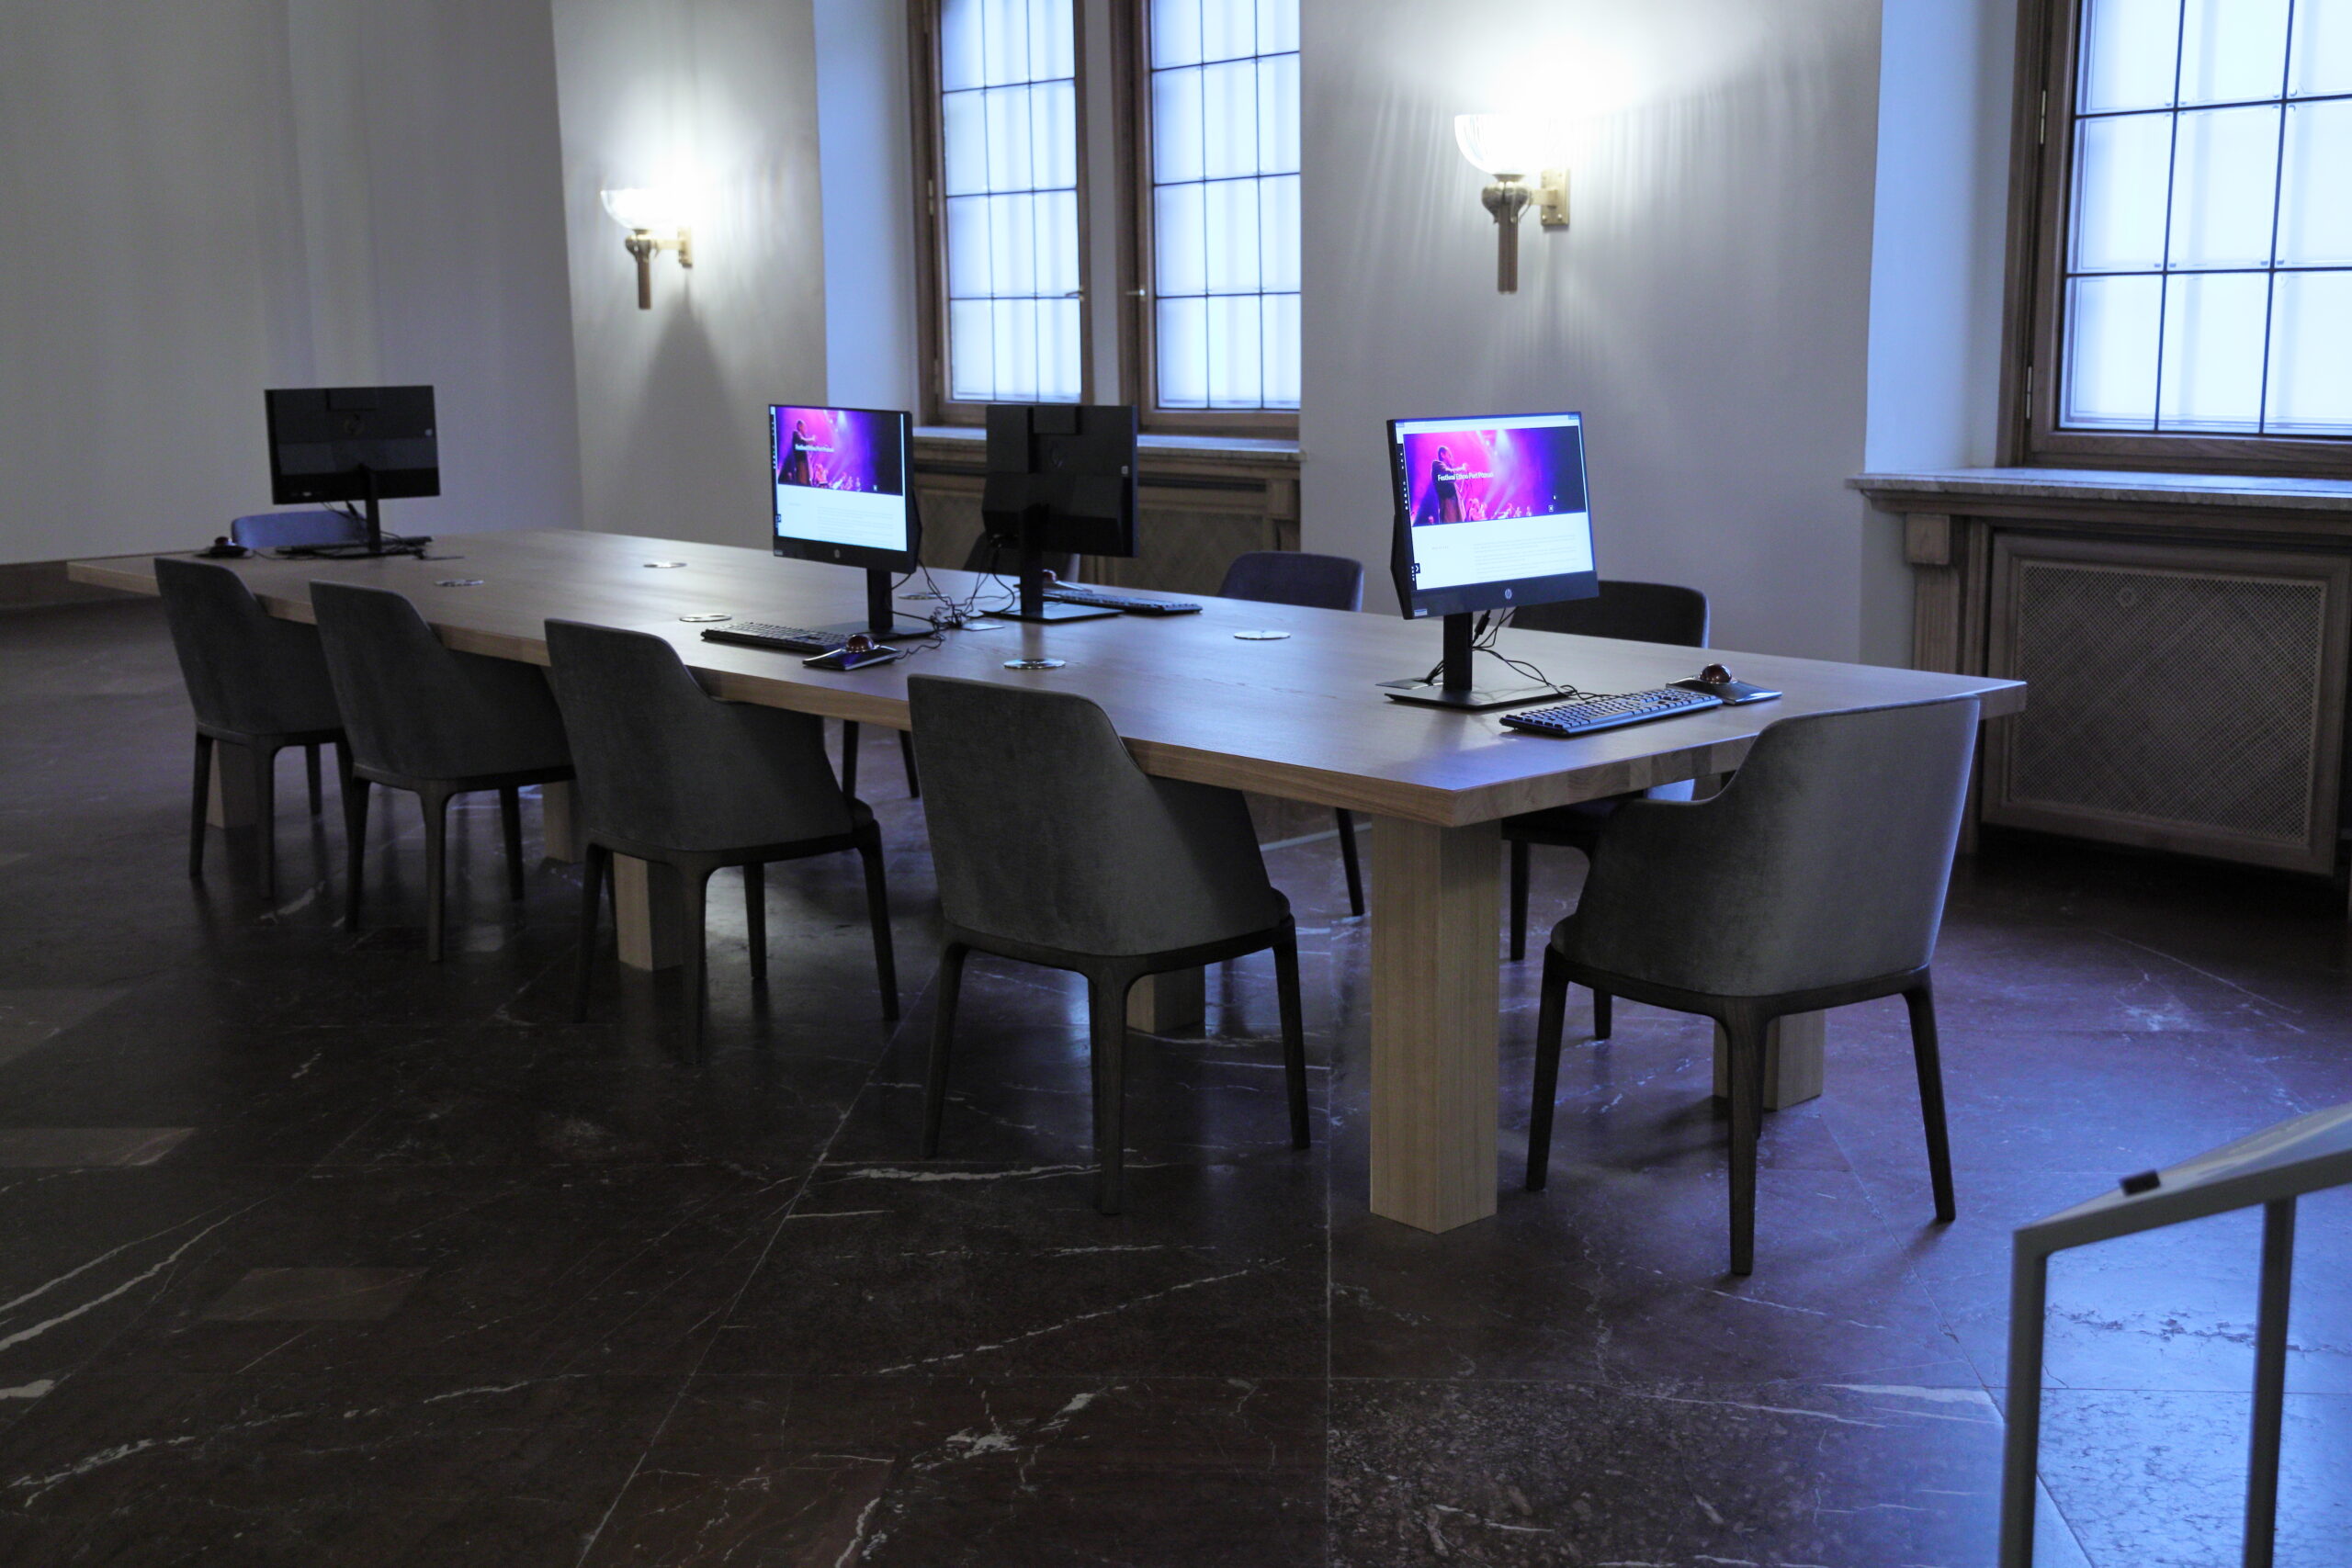 Widok pomieszczenia mediateki: na marmurowej podłodze stoi duży, jasny stół otoczony szarymi krzesłami. Na stole widać cztery monitory, z których dwa są włączone i mają kolorowe ekrany. Za stołem widać ścianę z lampami - kinkietami, z których pada światło, oraz z oknami.